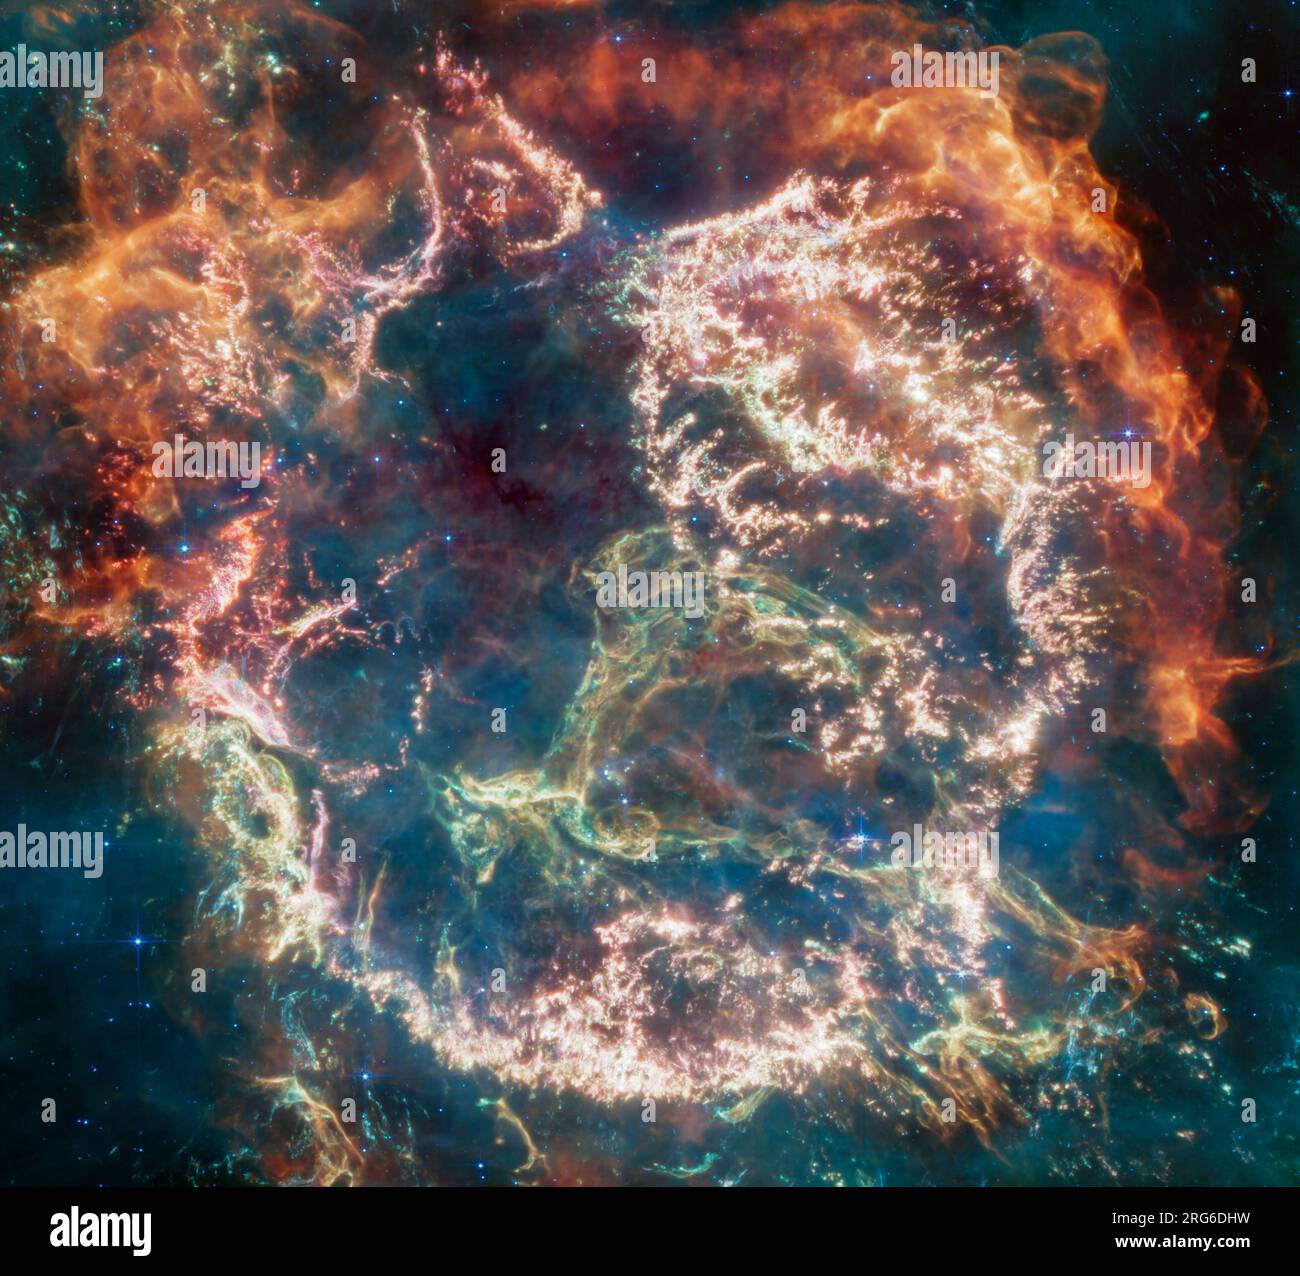 Colori vivaci e strutture intricate del residuo della supernova Cassiopeia A. Foto Stock